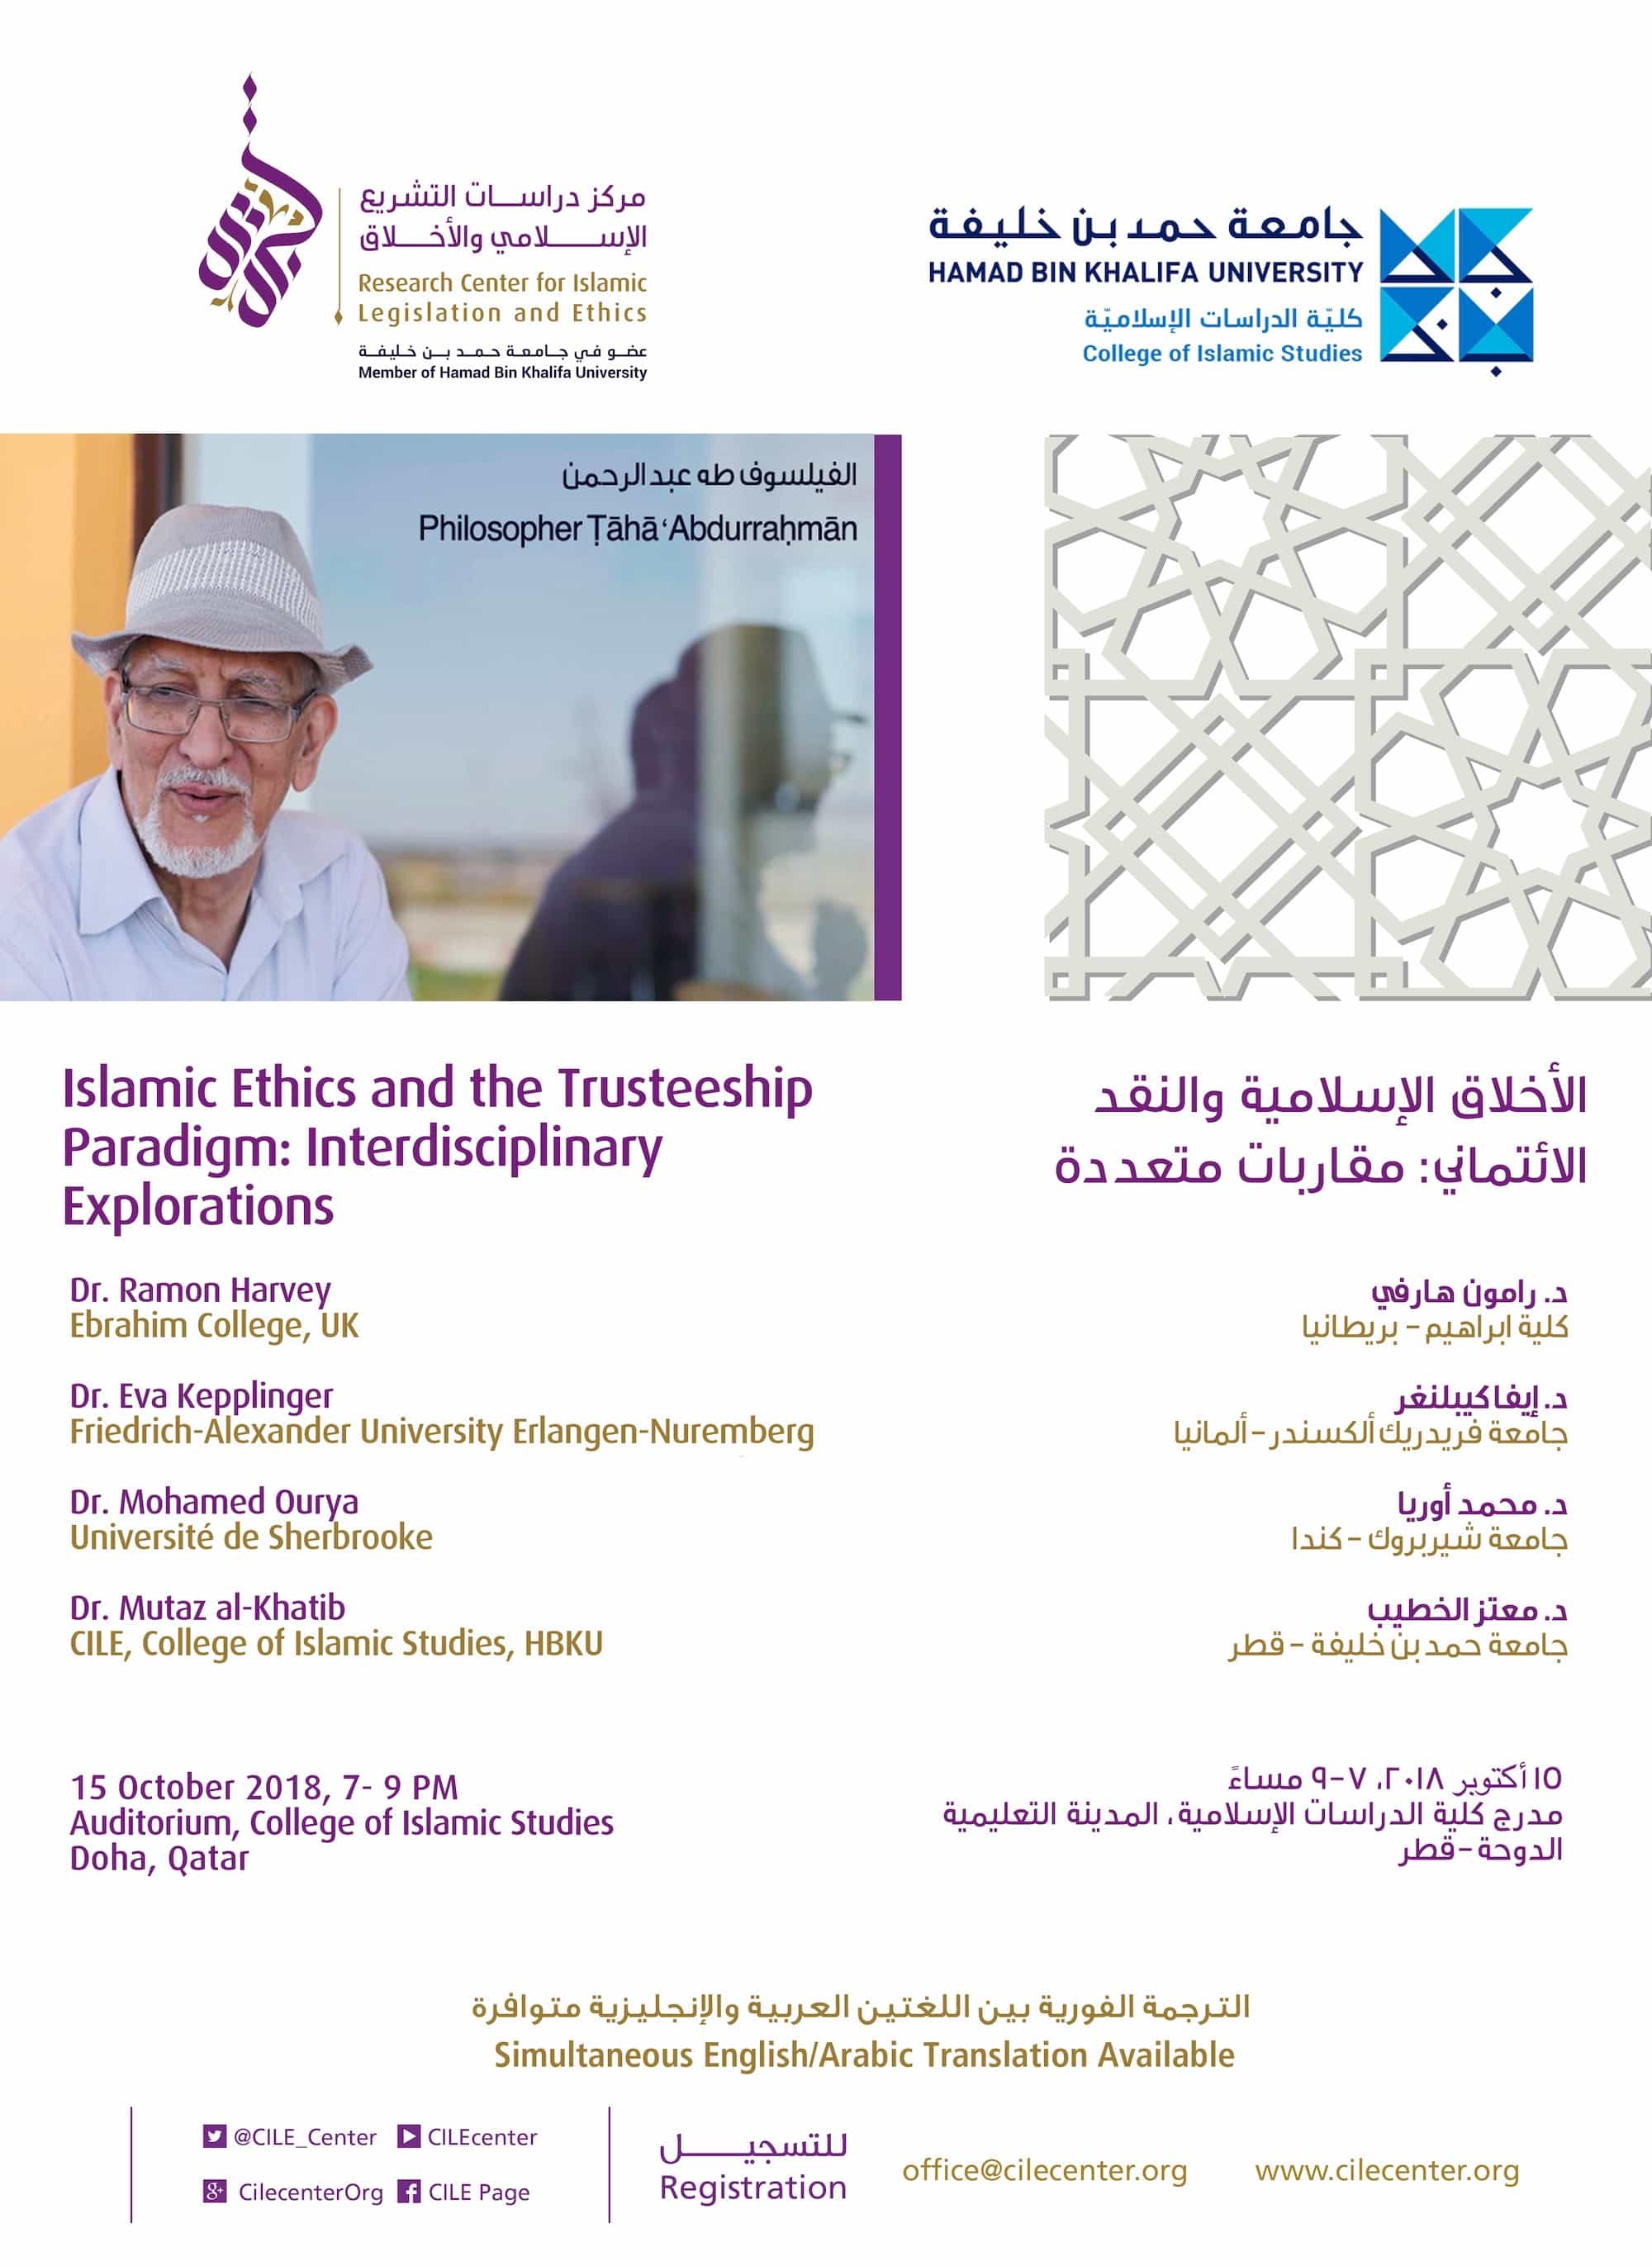 10/2018 Lecture "Islamic Ethics and the Trusteeship Paradigm: Interdisciplinary Explorations"